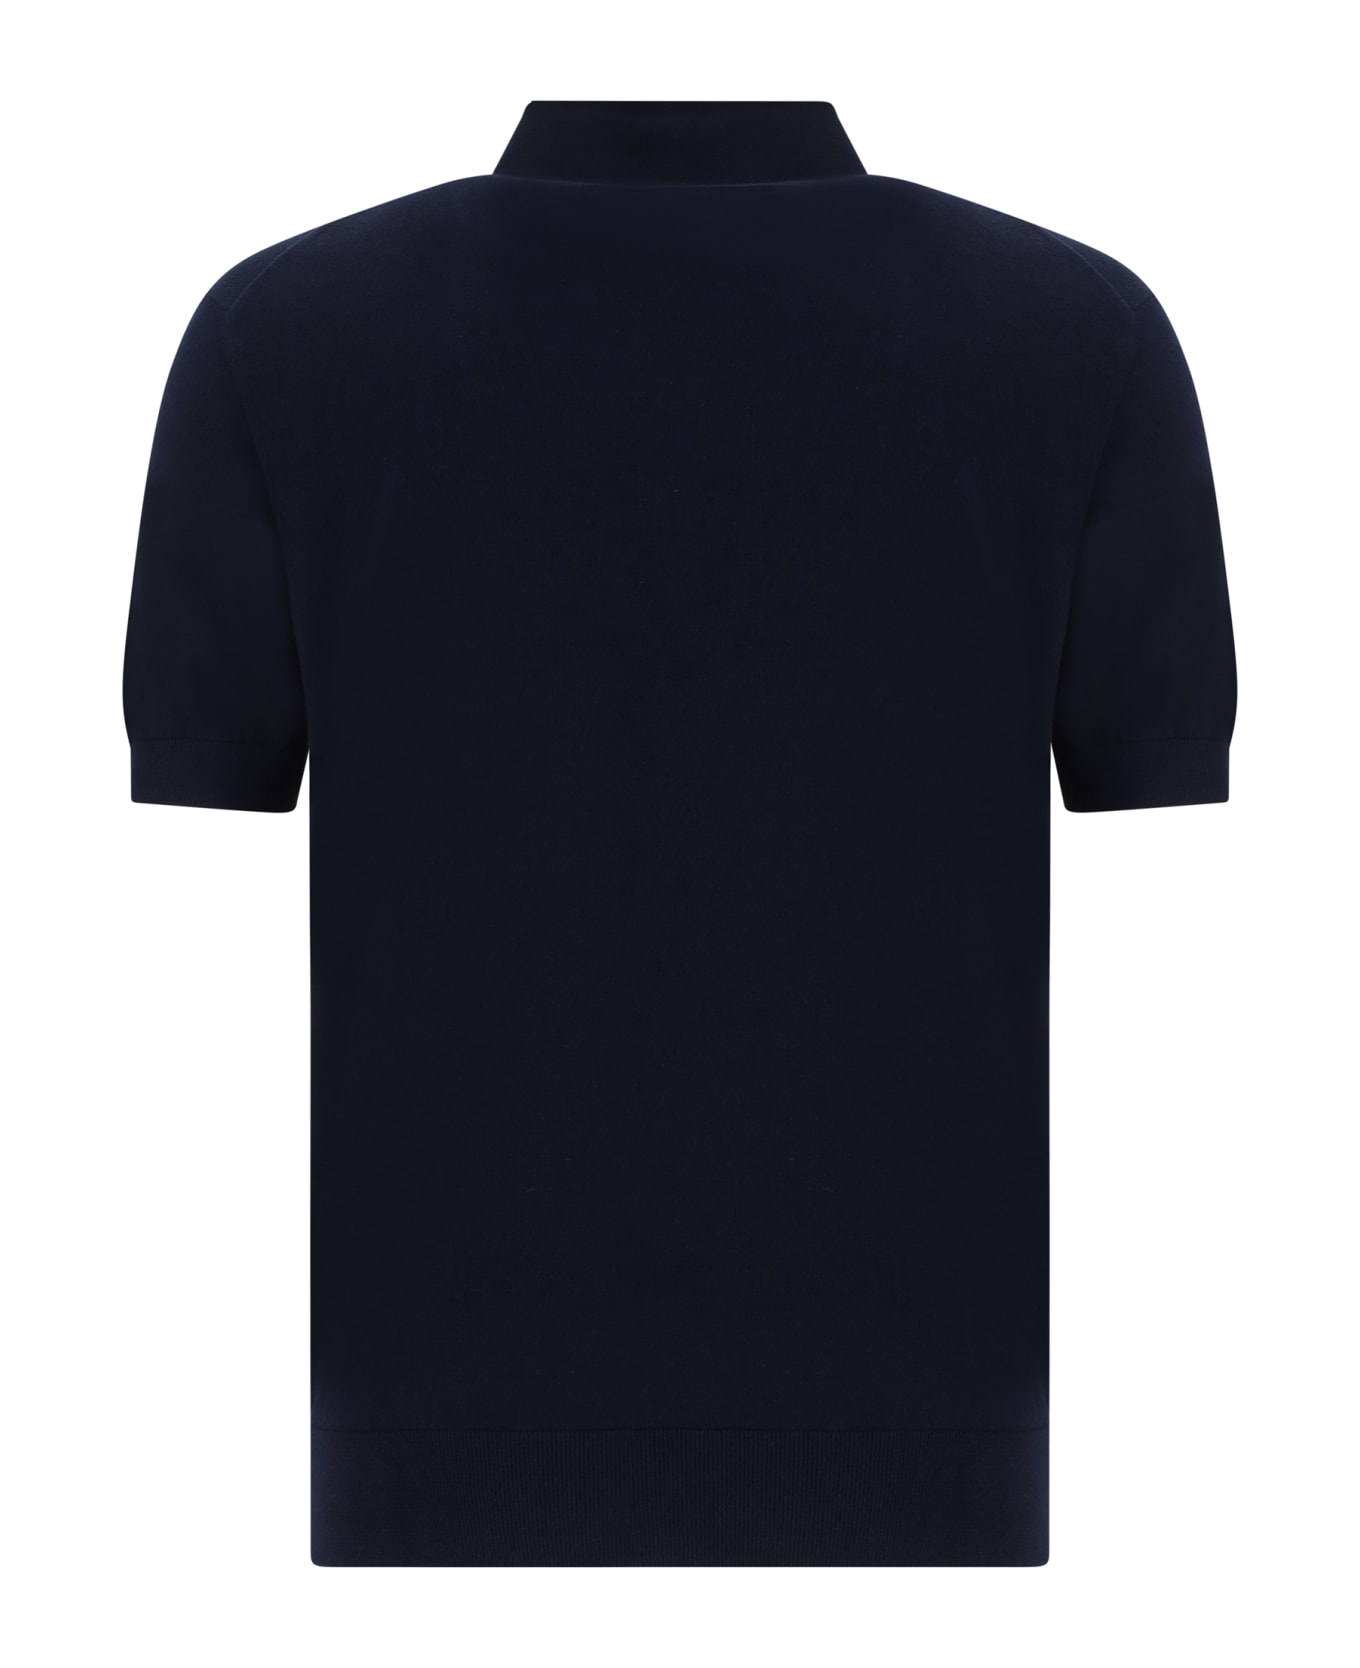 Zegna Polo Shirt - Blue Navy Unito